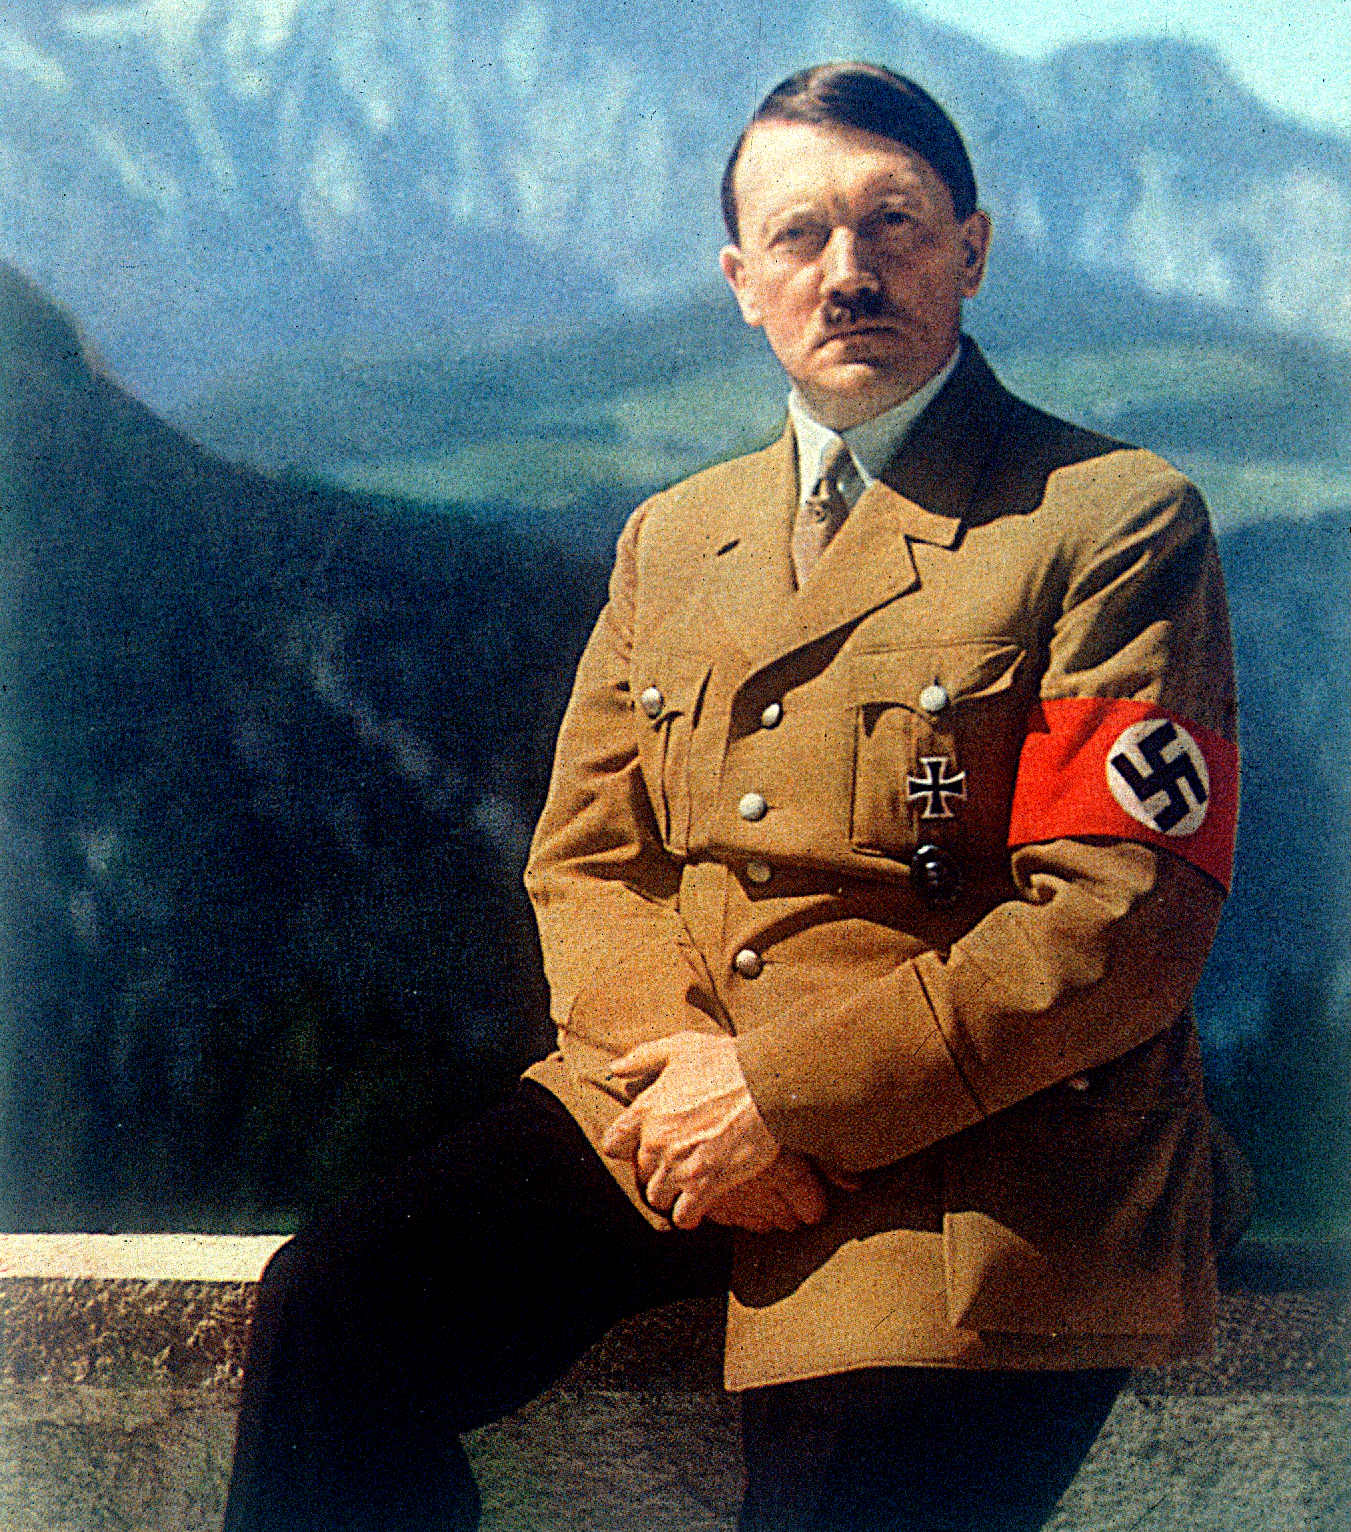 Adolf Hitler, Der Fuhrer, Chancellor of Nazi Germany